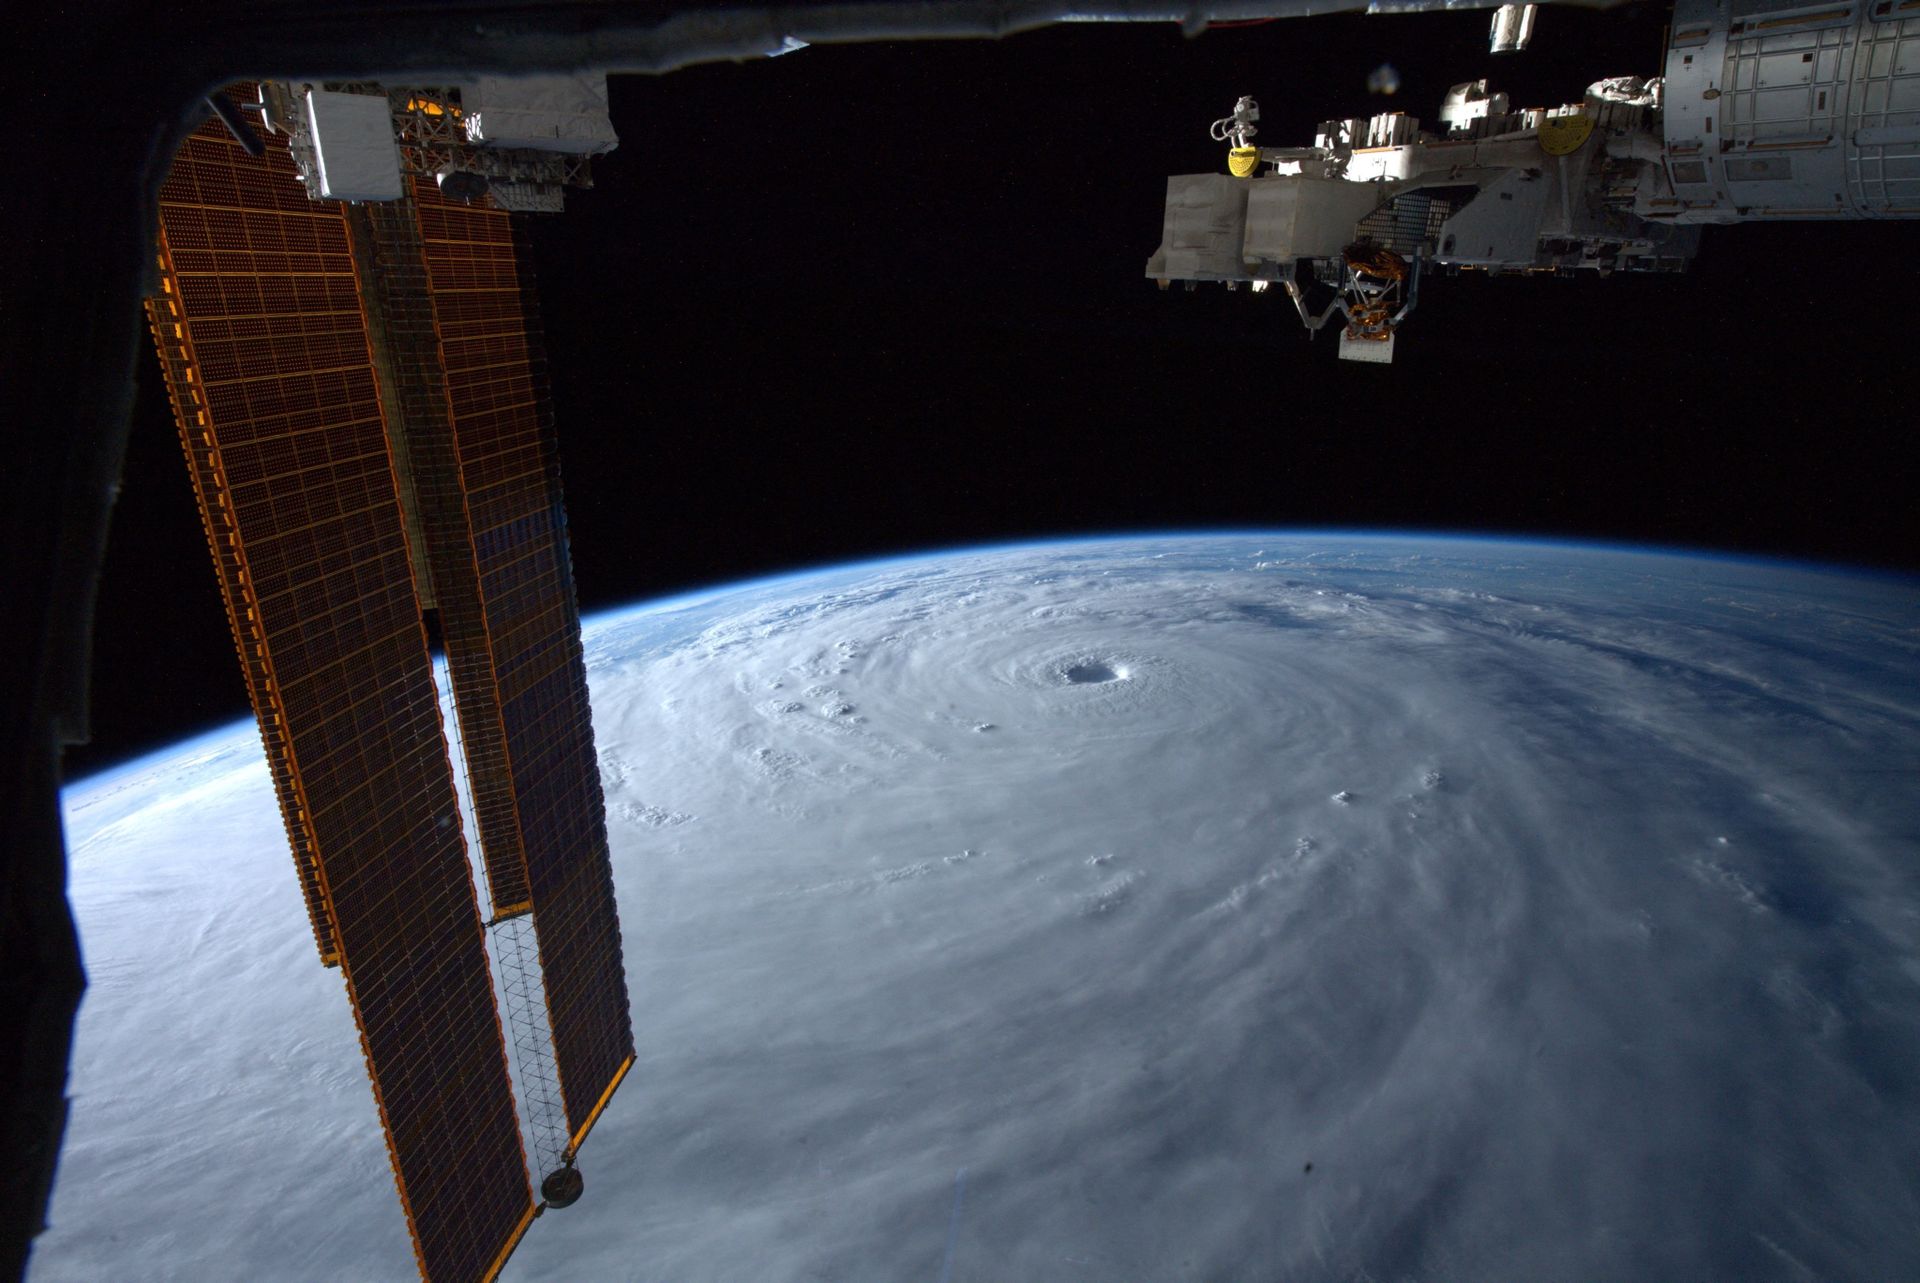 Et bilde tatt fra en satellitt eller en form for romfartøy viser den buede overflaten av Jorden, som er dekket av tykke, hvite skyer som samler seg i en spiral, og i øyet (midten) av stormen er det et slags hull. 